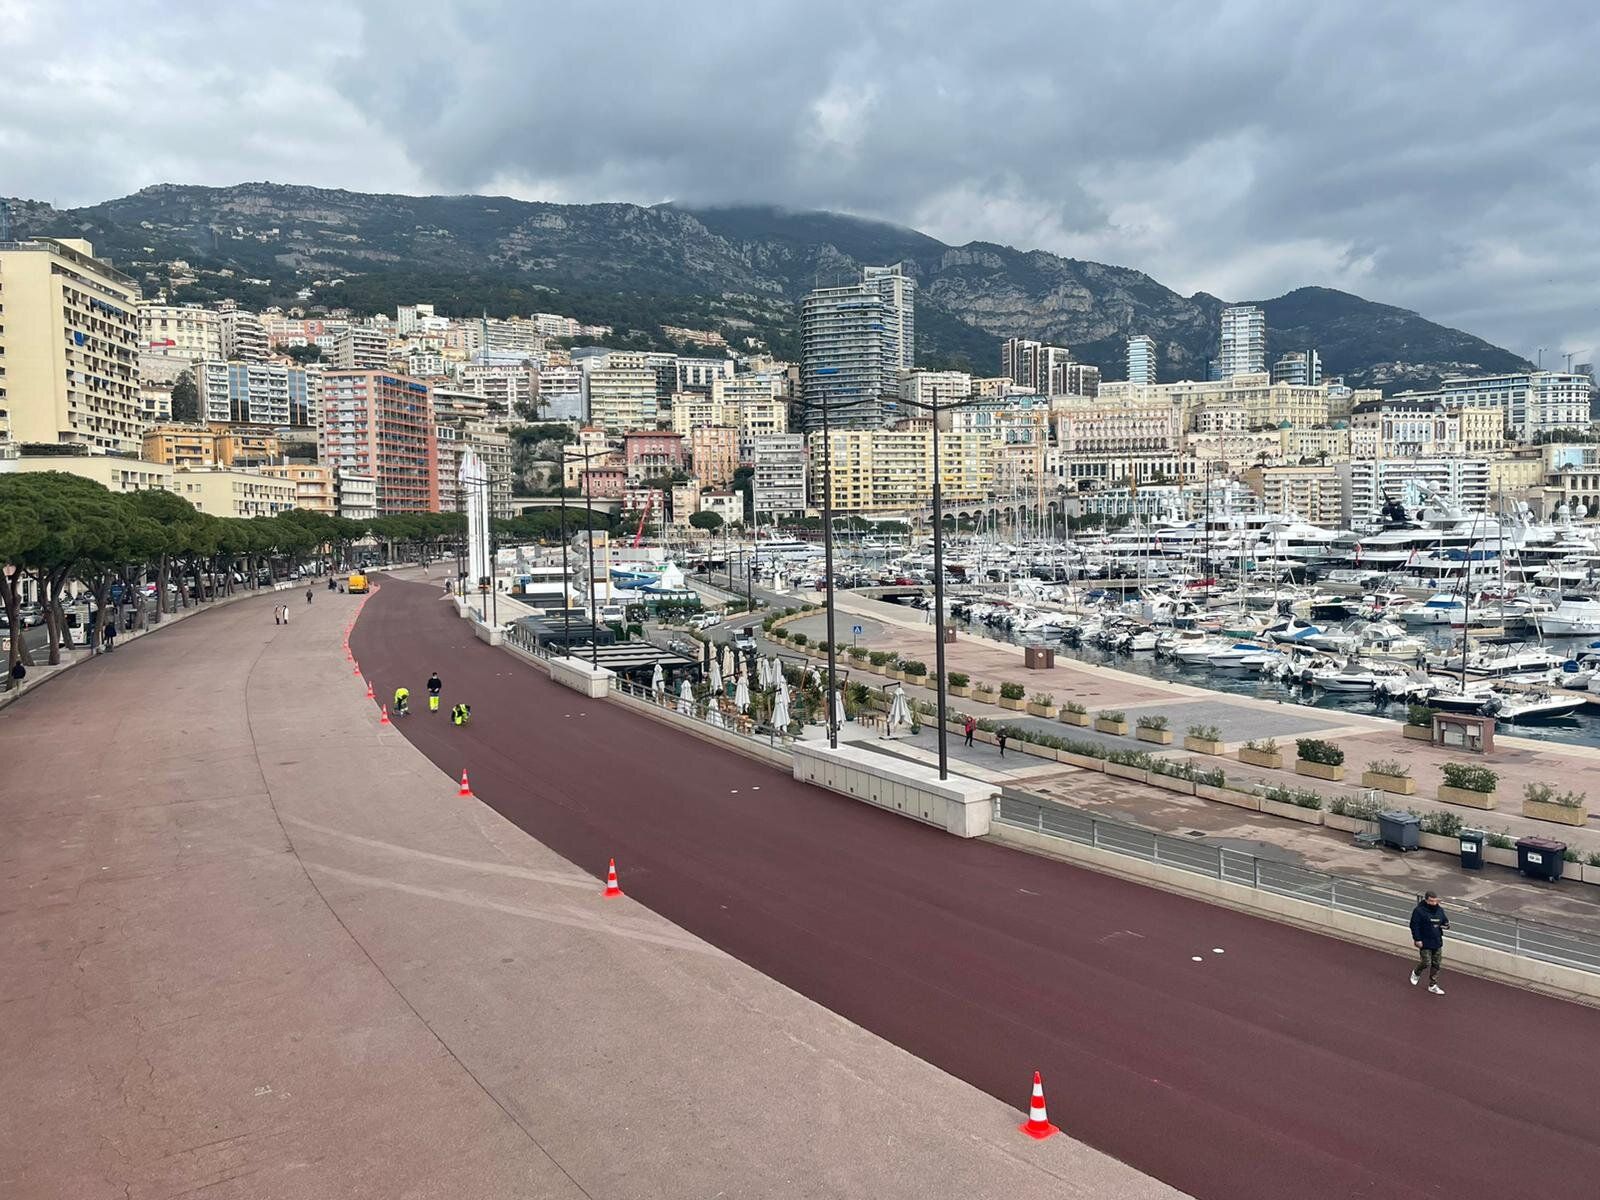 Monaco, F1